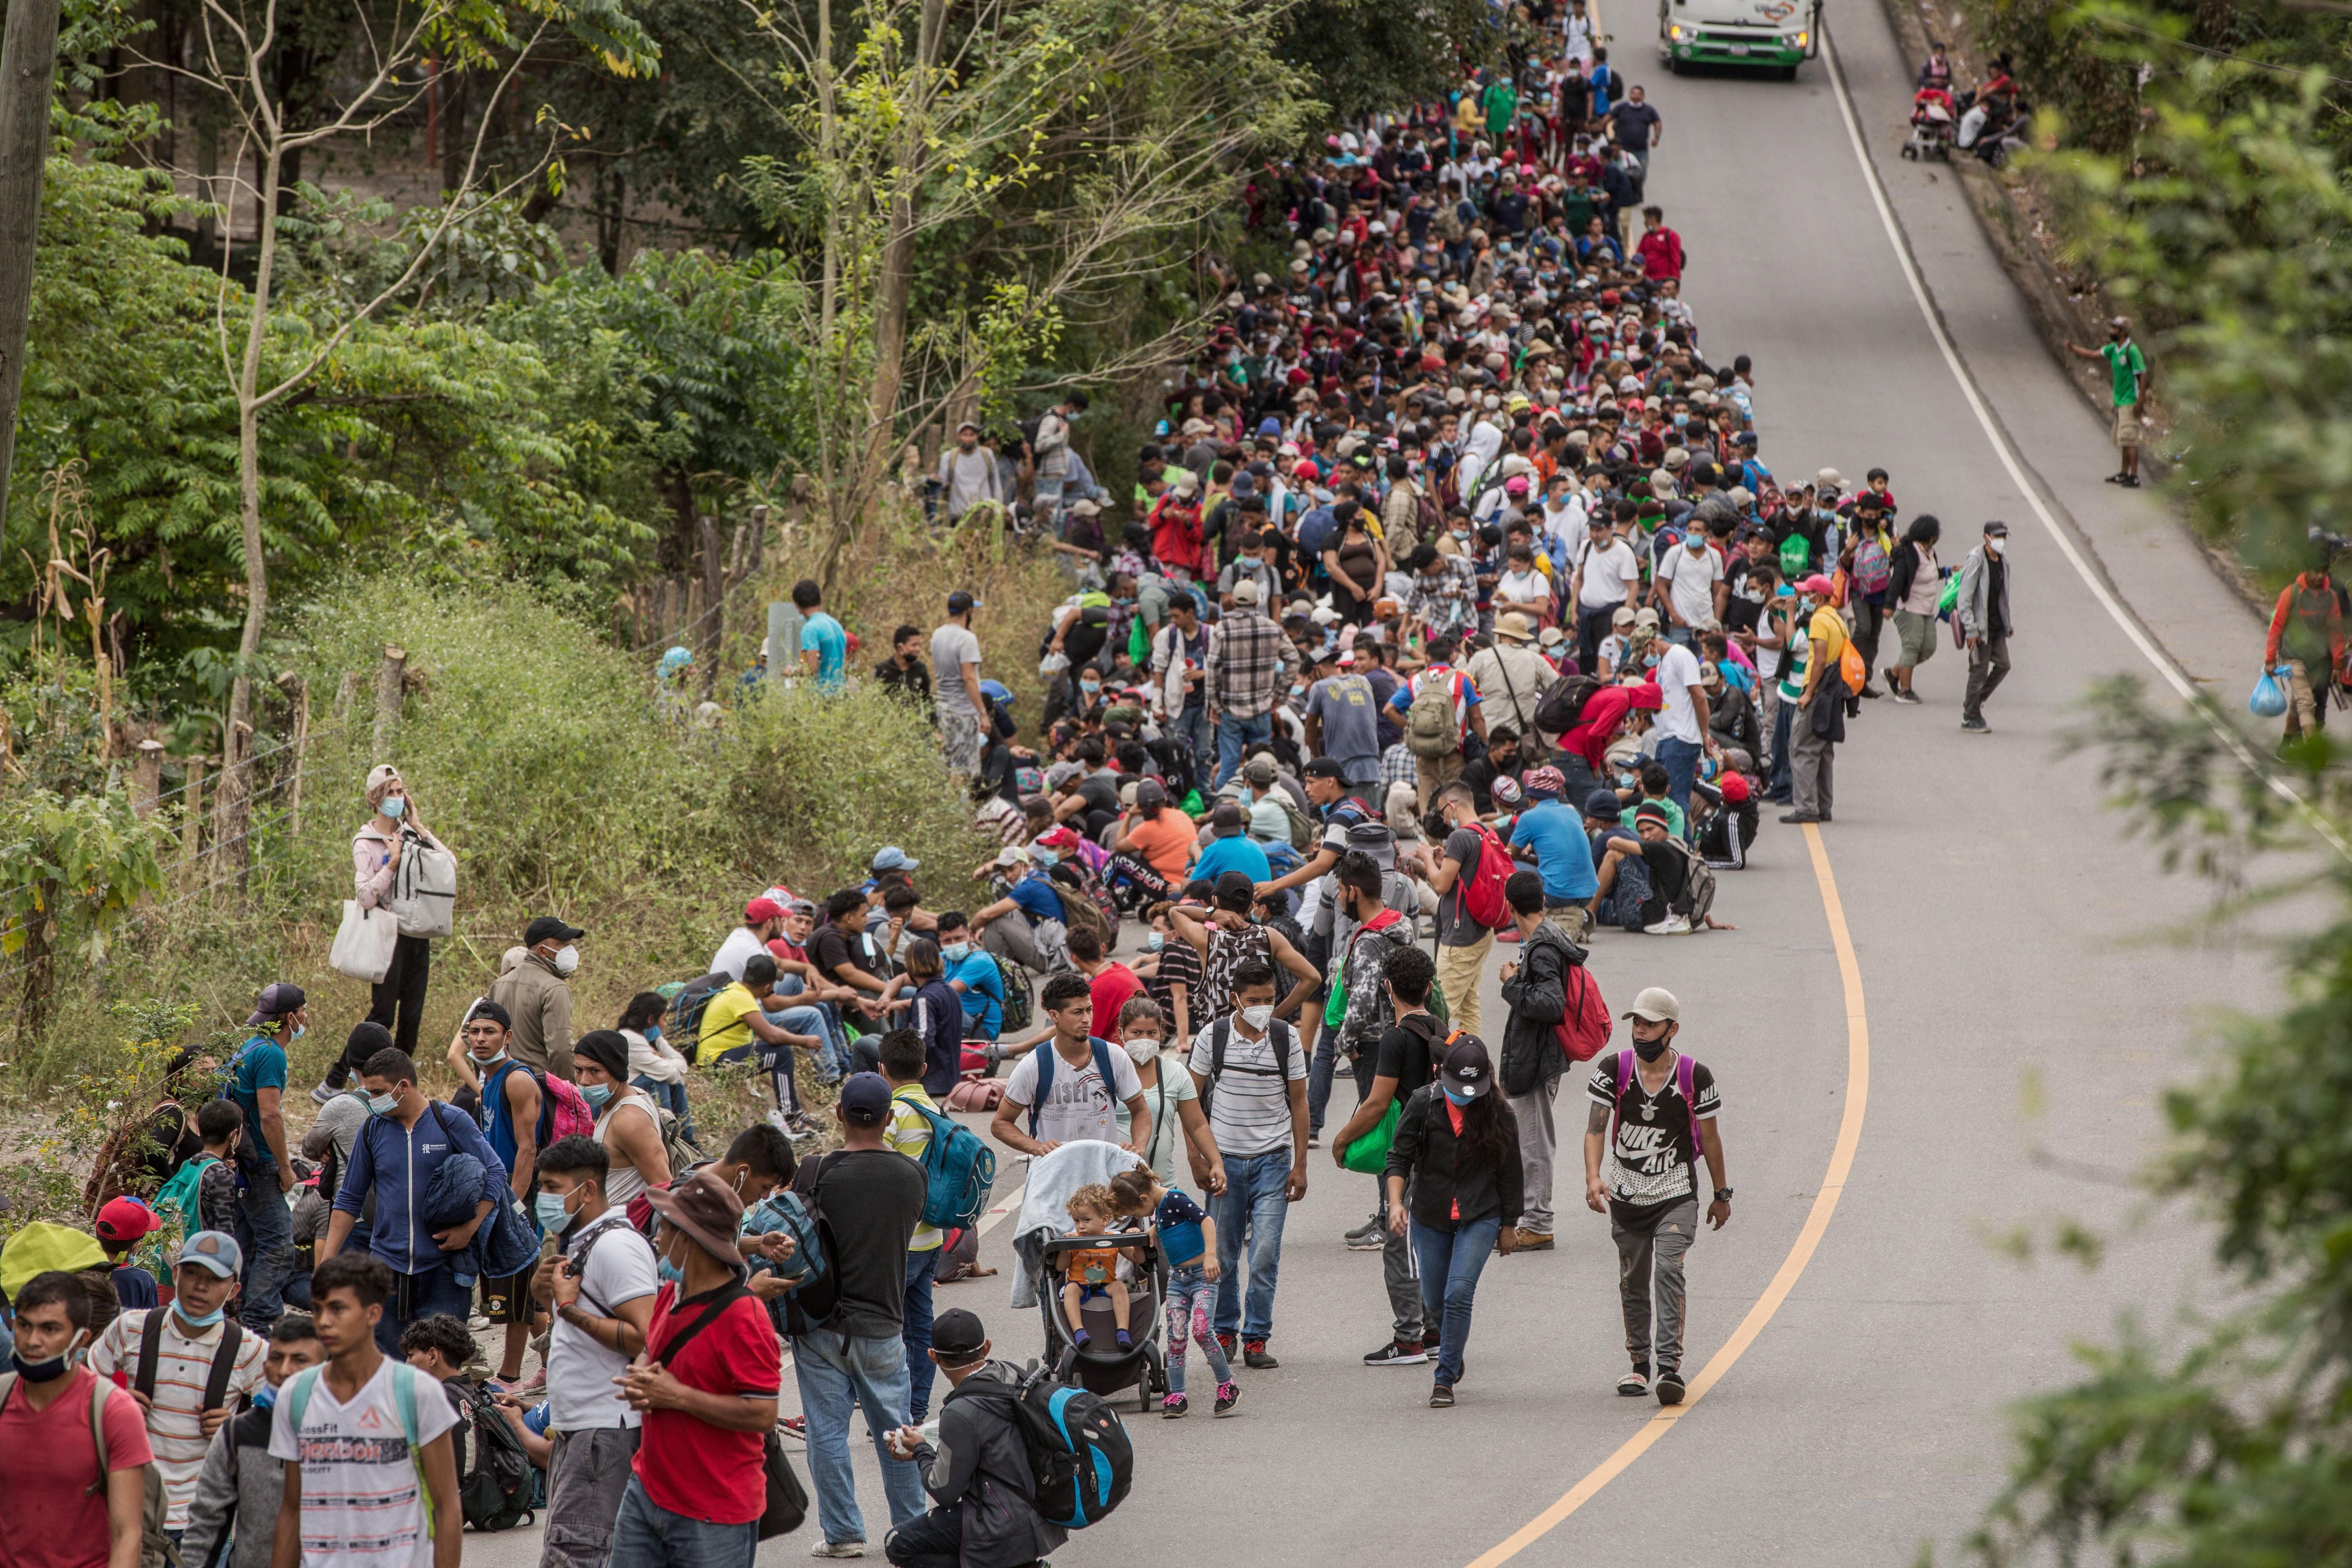 Las caravanas podrían ser motivadas con fines políticos y criminales. (Foto Prensa Libre: Hemeroteca PL)